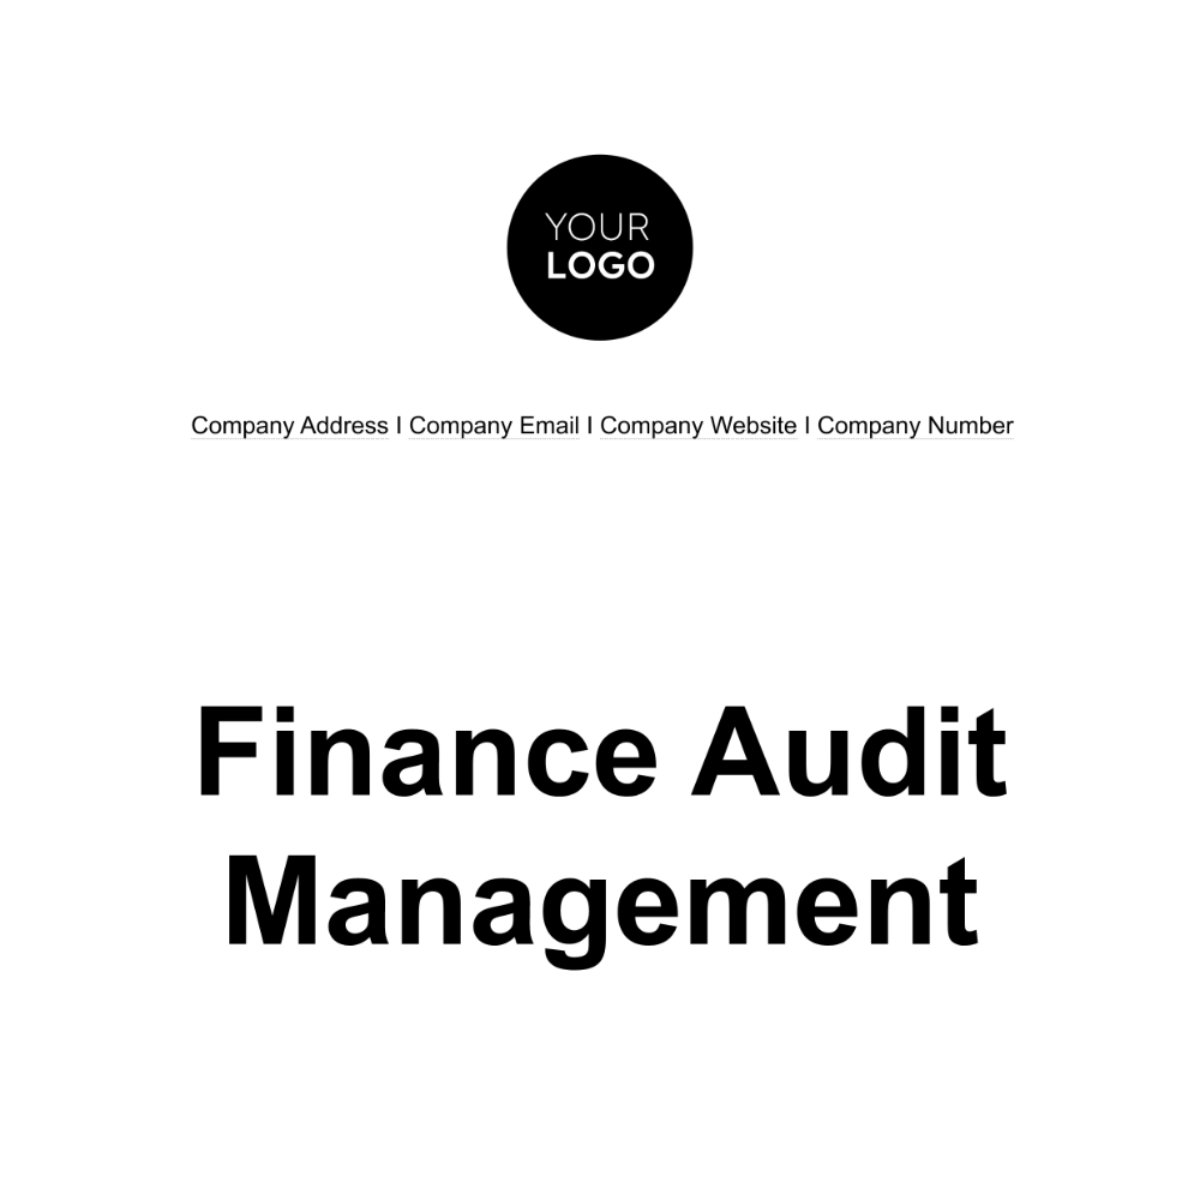 Finance Audit Management Template